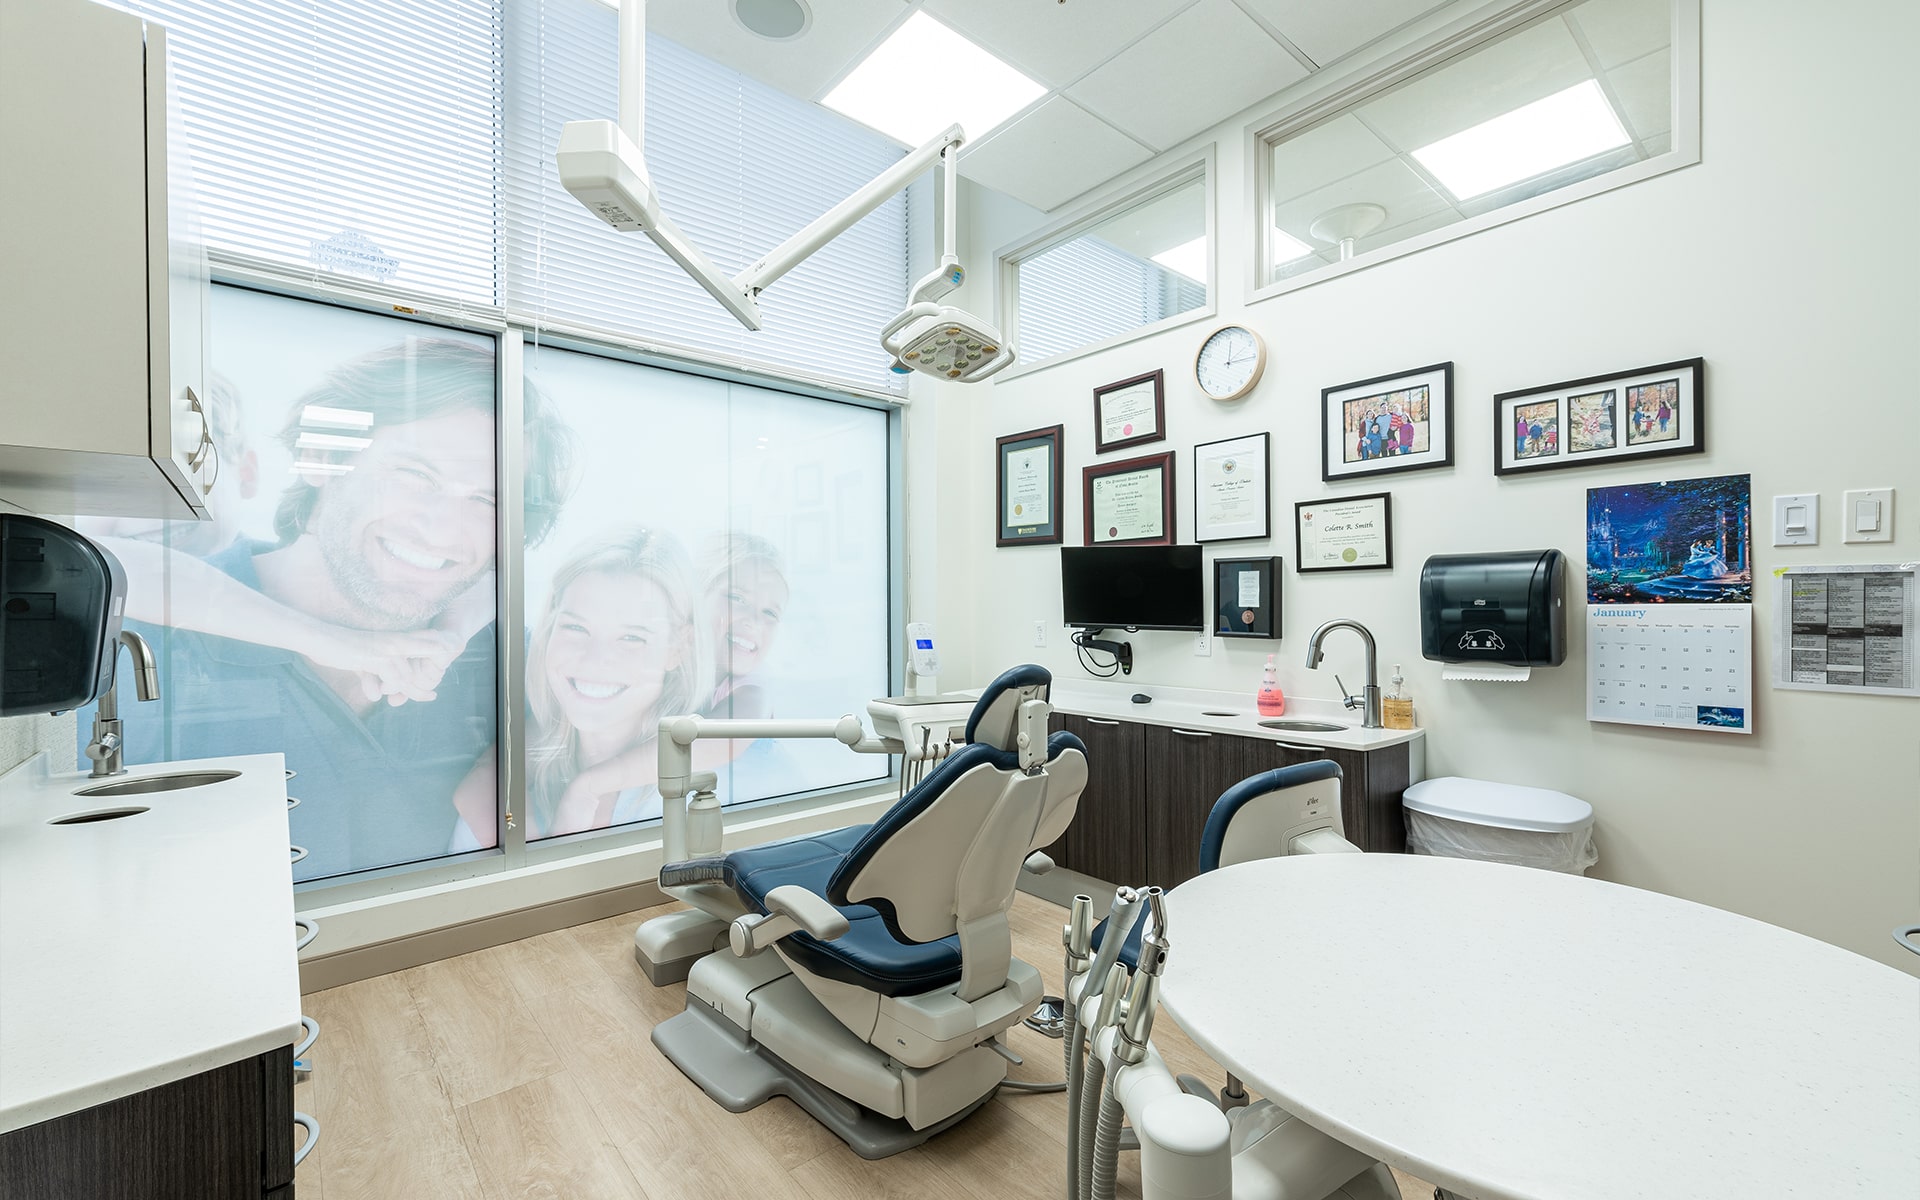 Bedford Dental Centre